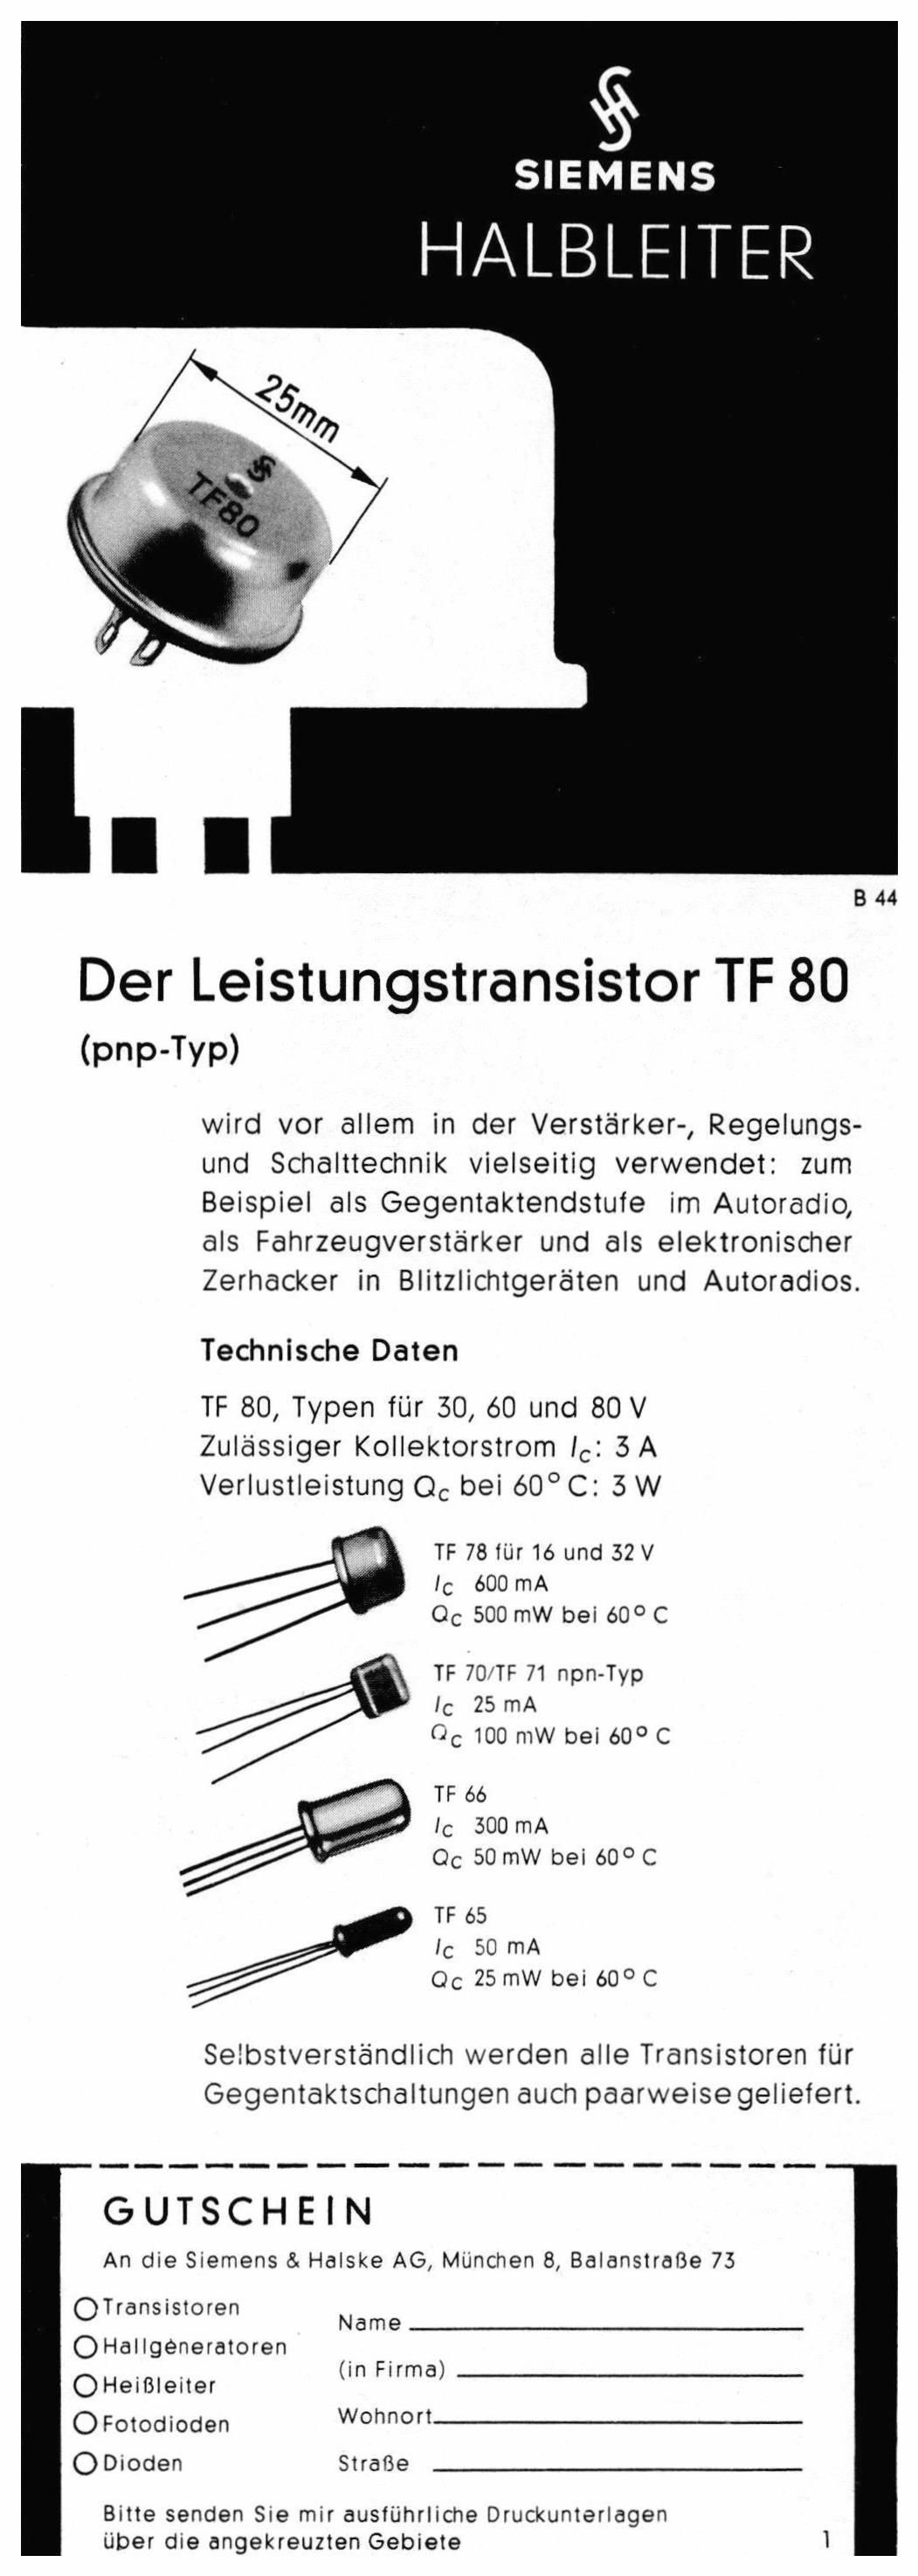 Siemens 1959 5.jpg